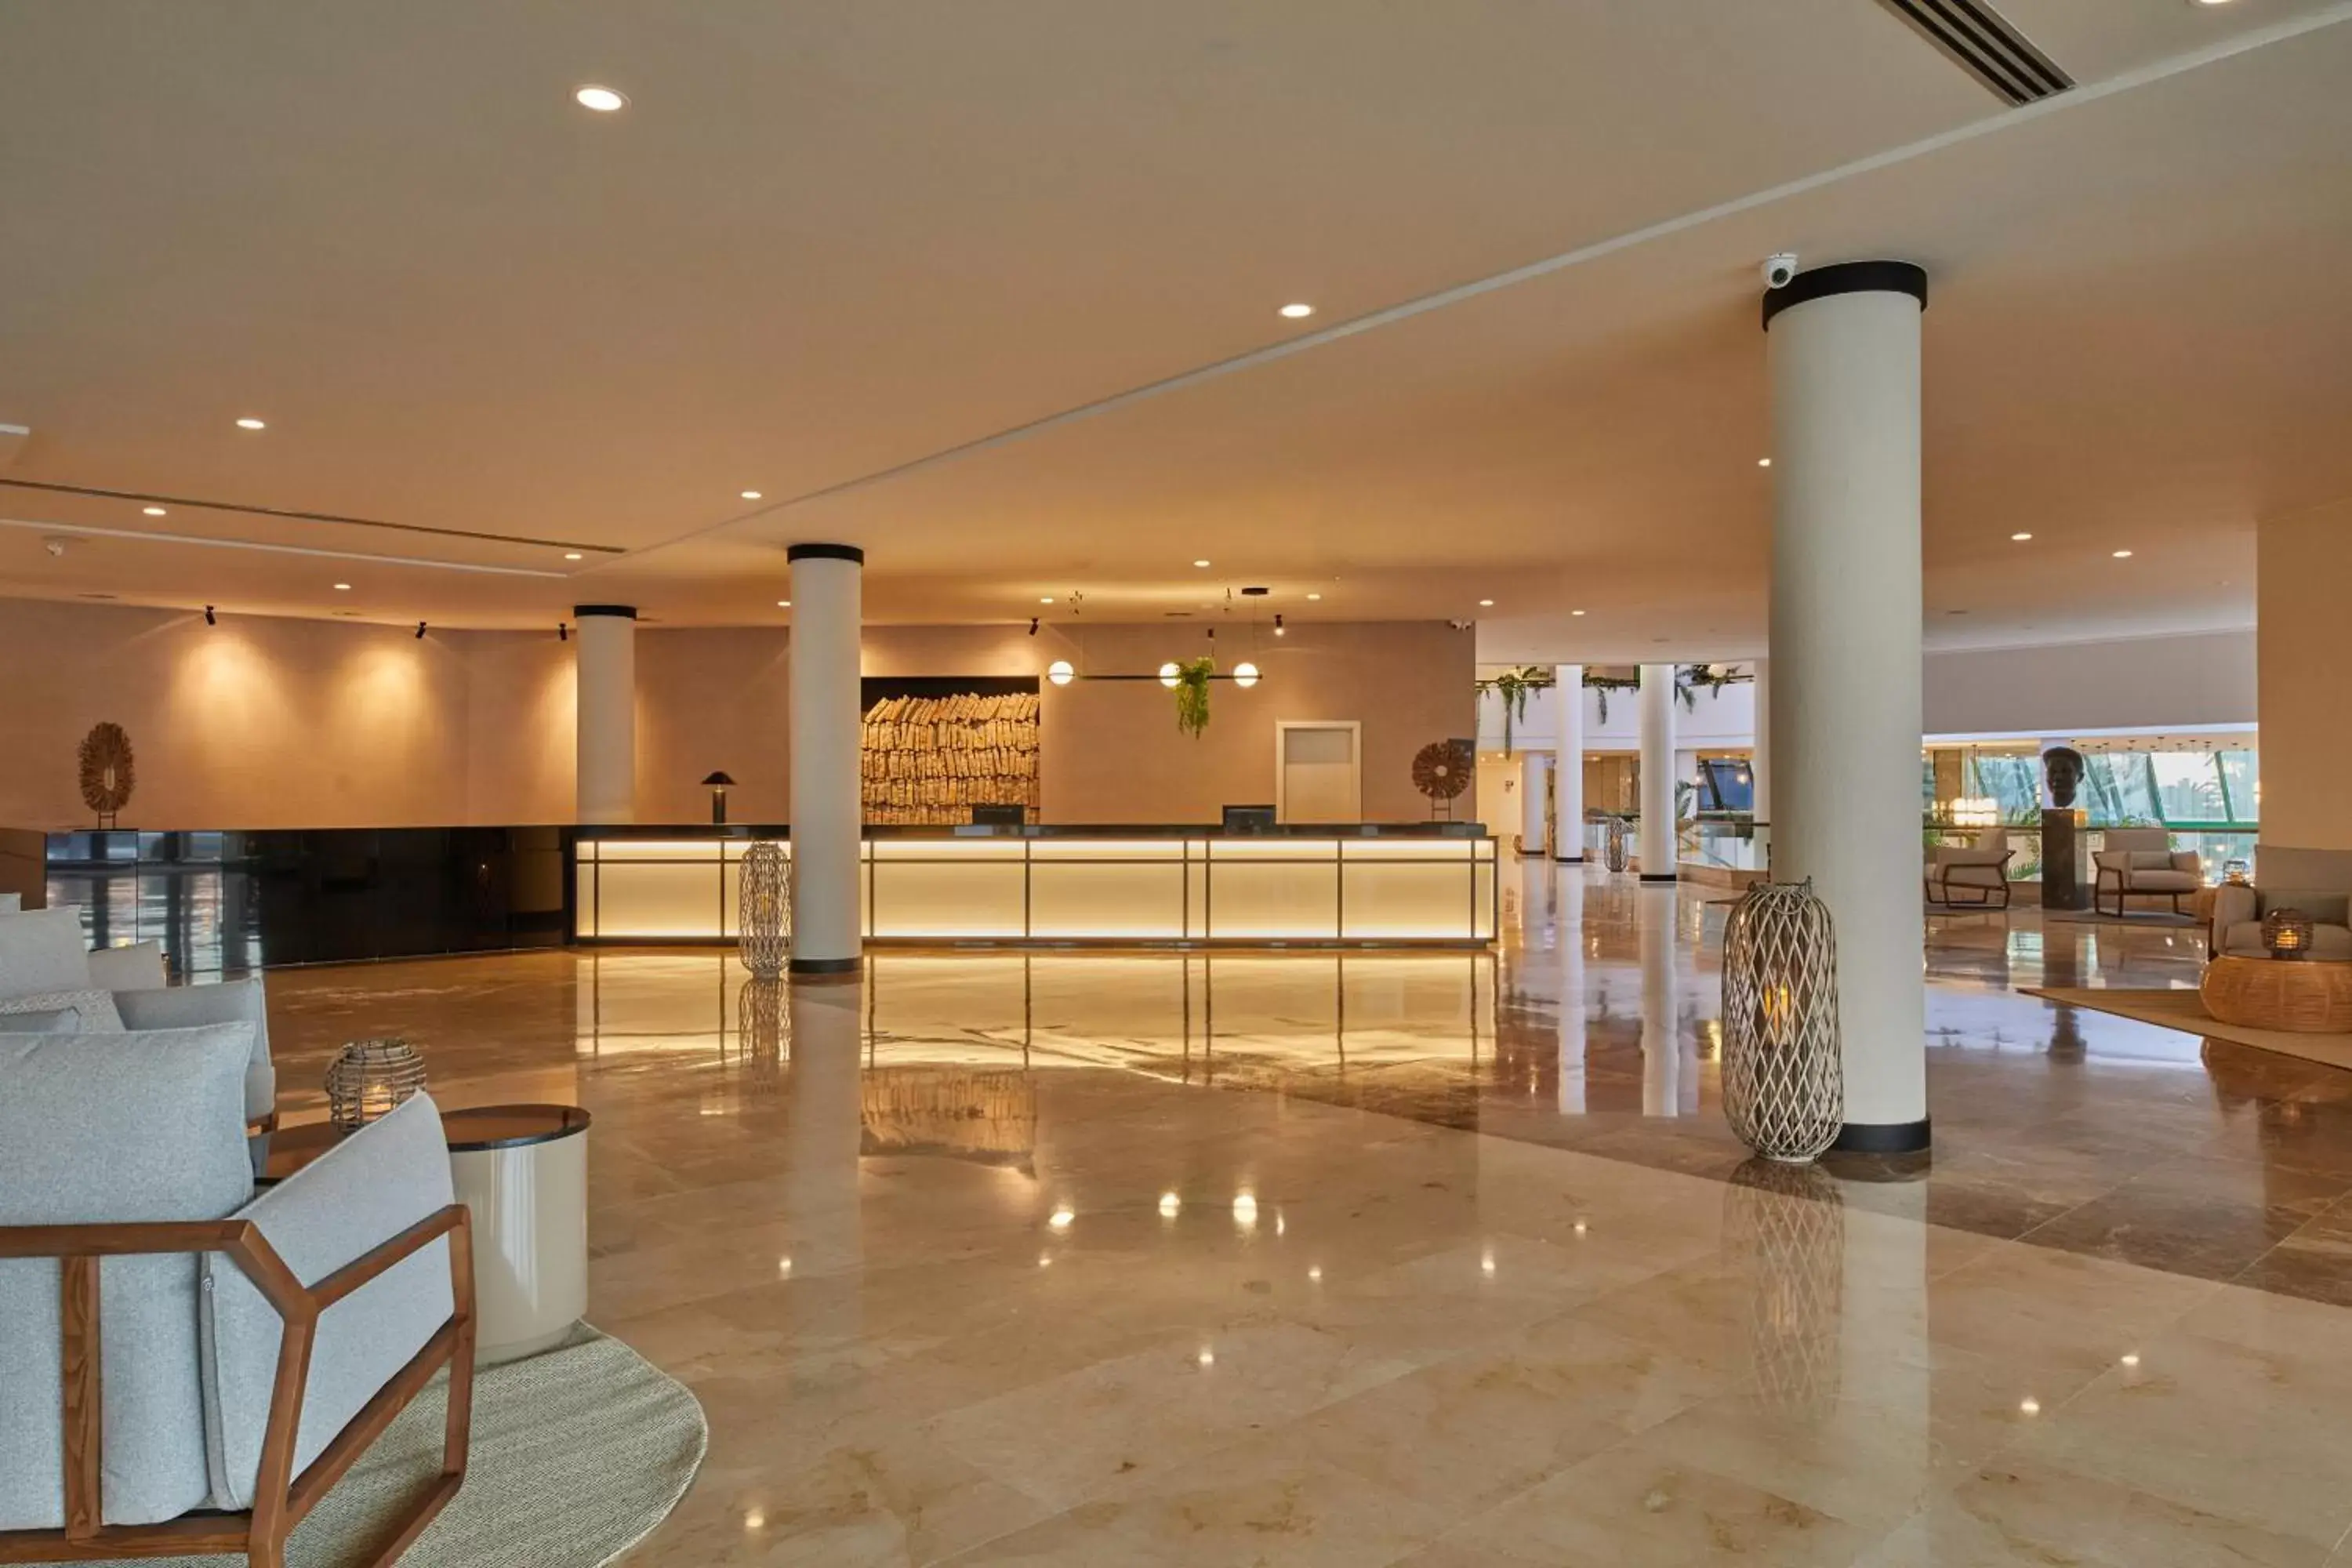 Lobby or reception, Lobby/Reception in Dreams Lanzarote Playa Dorada Resort & Spa